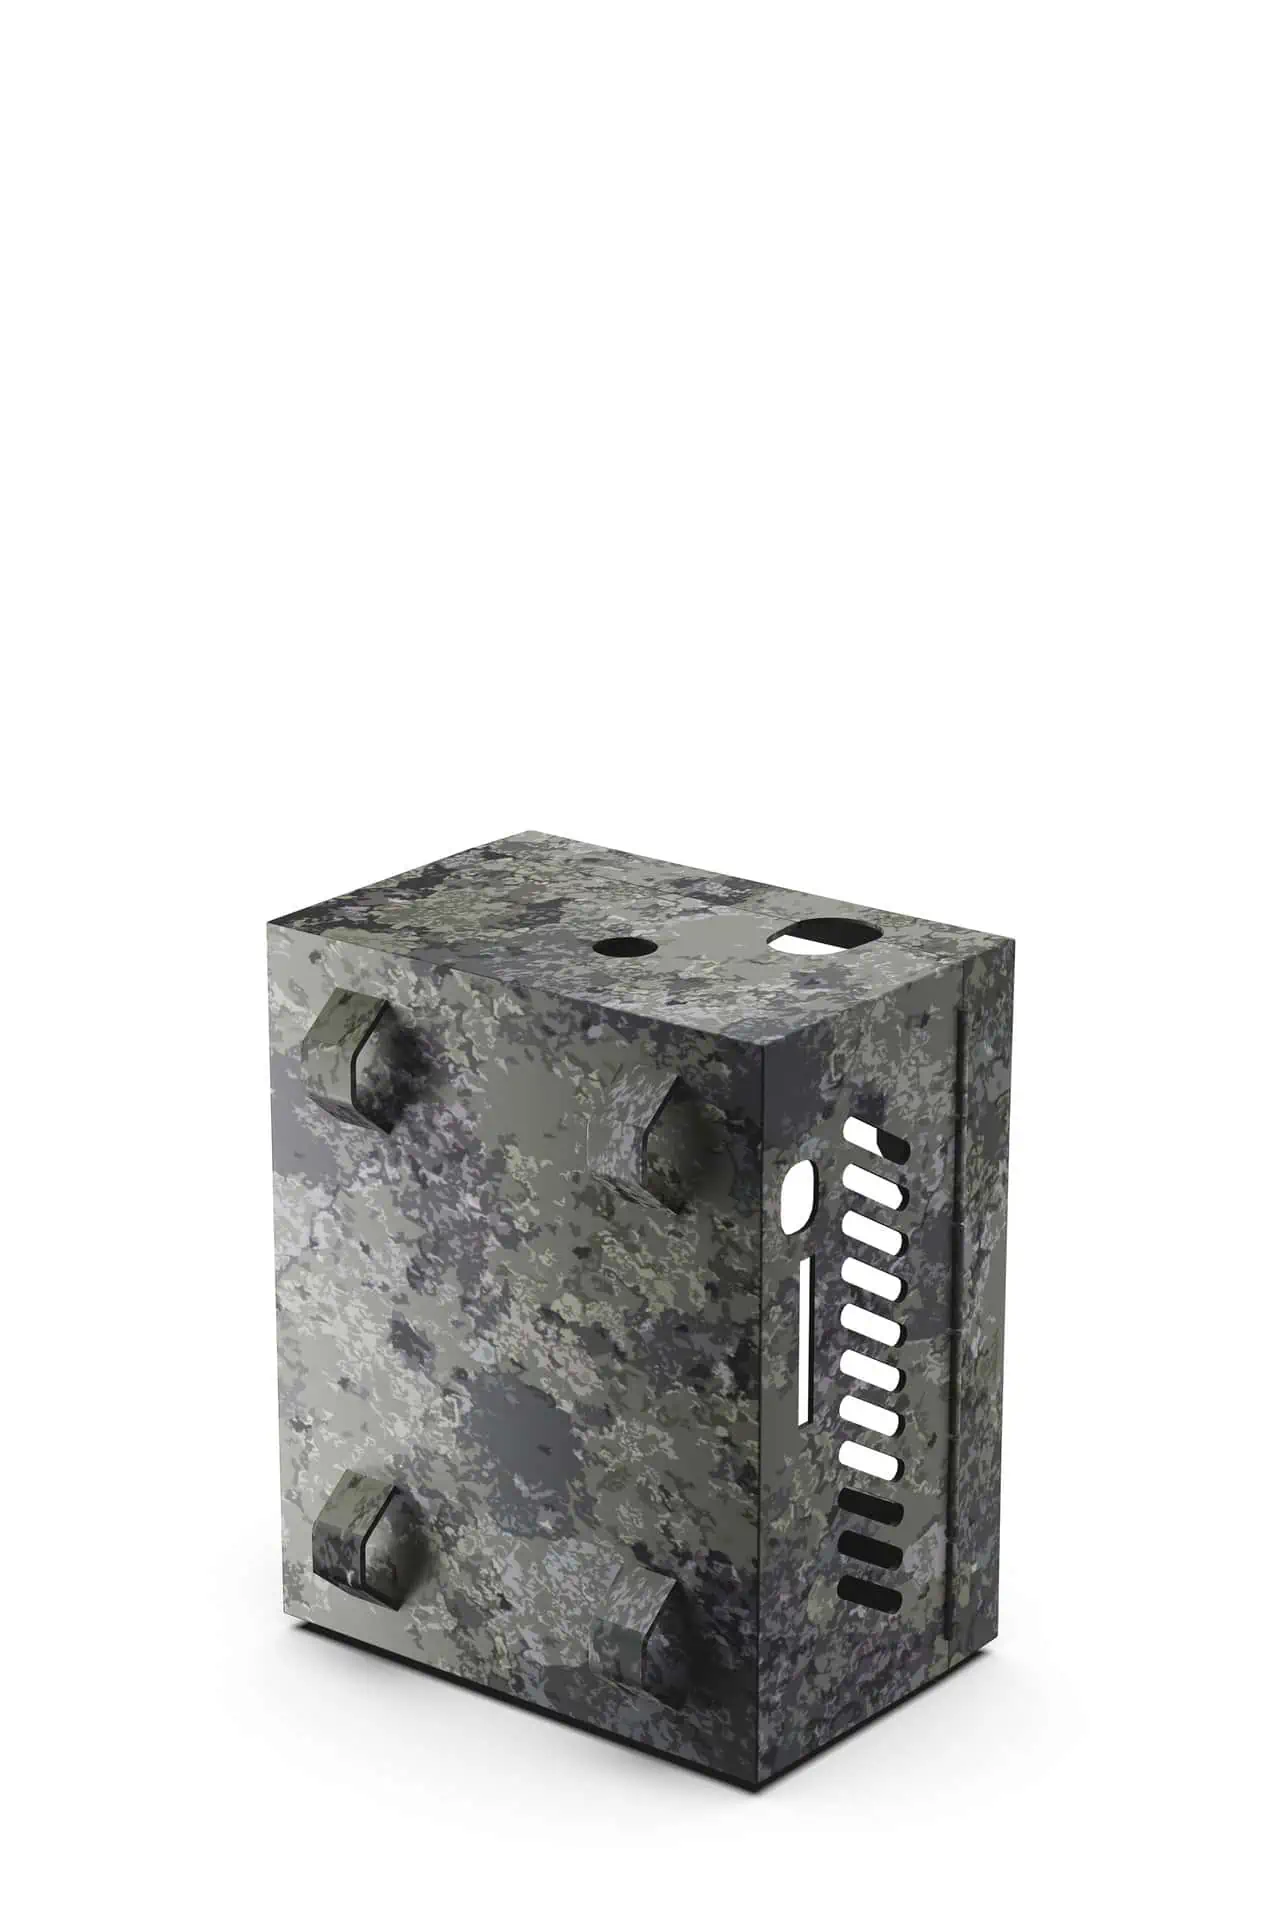 ZEISS Box in metallo per fototrappola Secacam 5